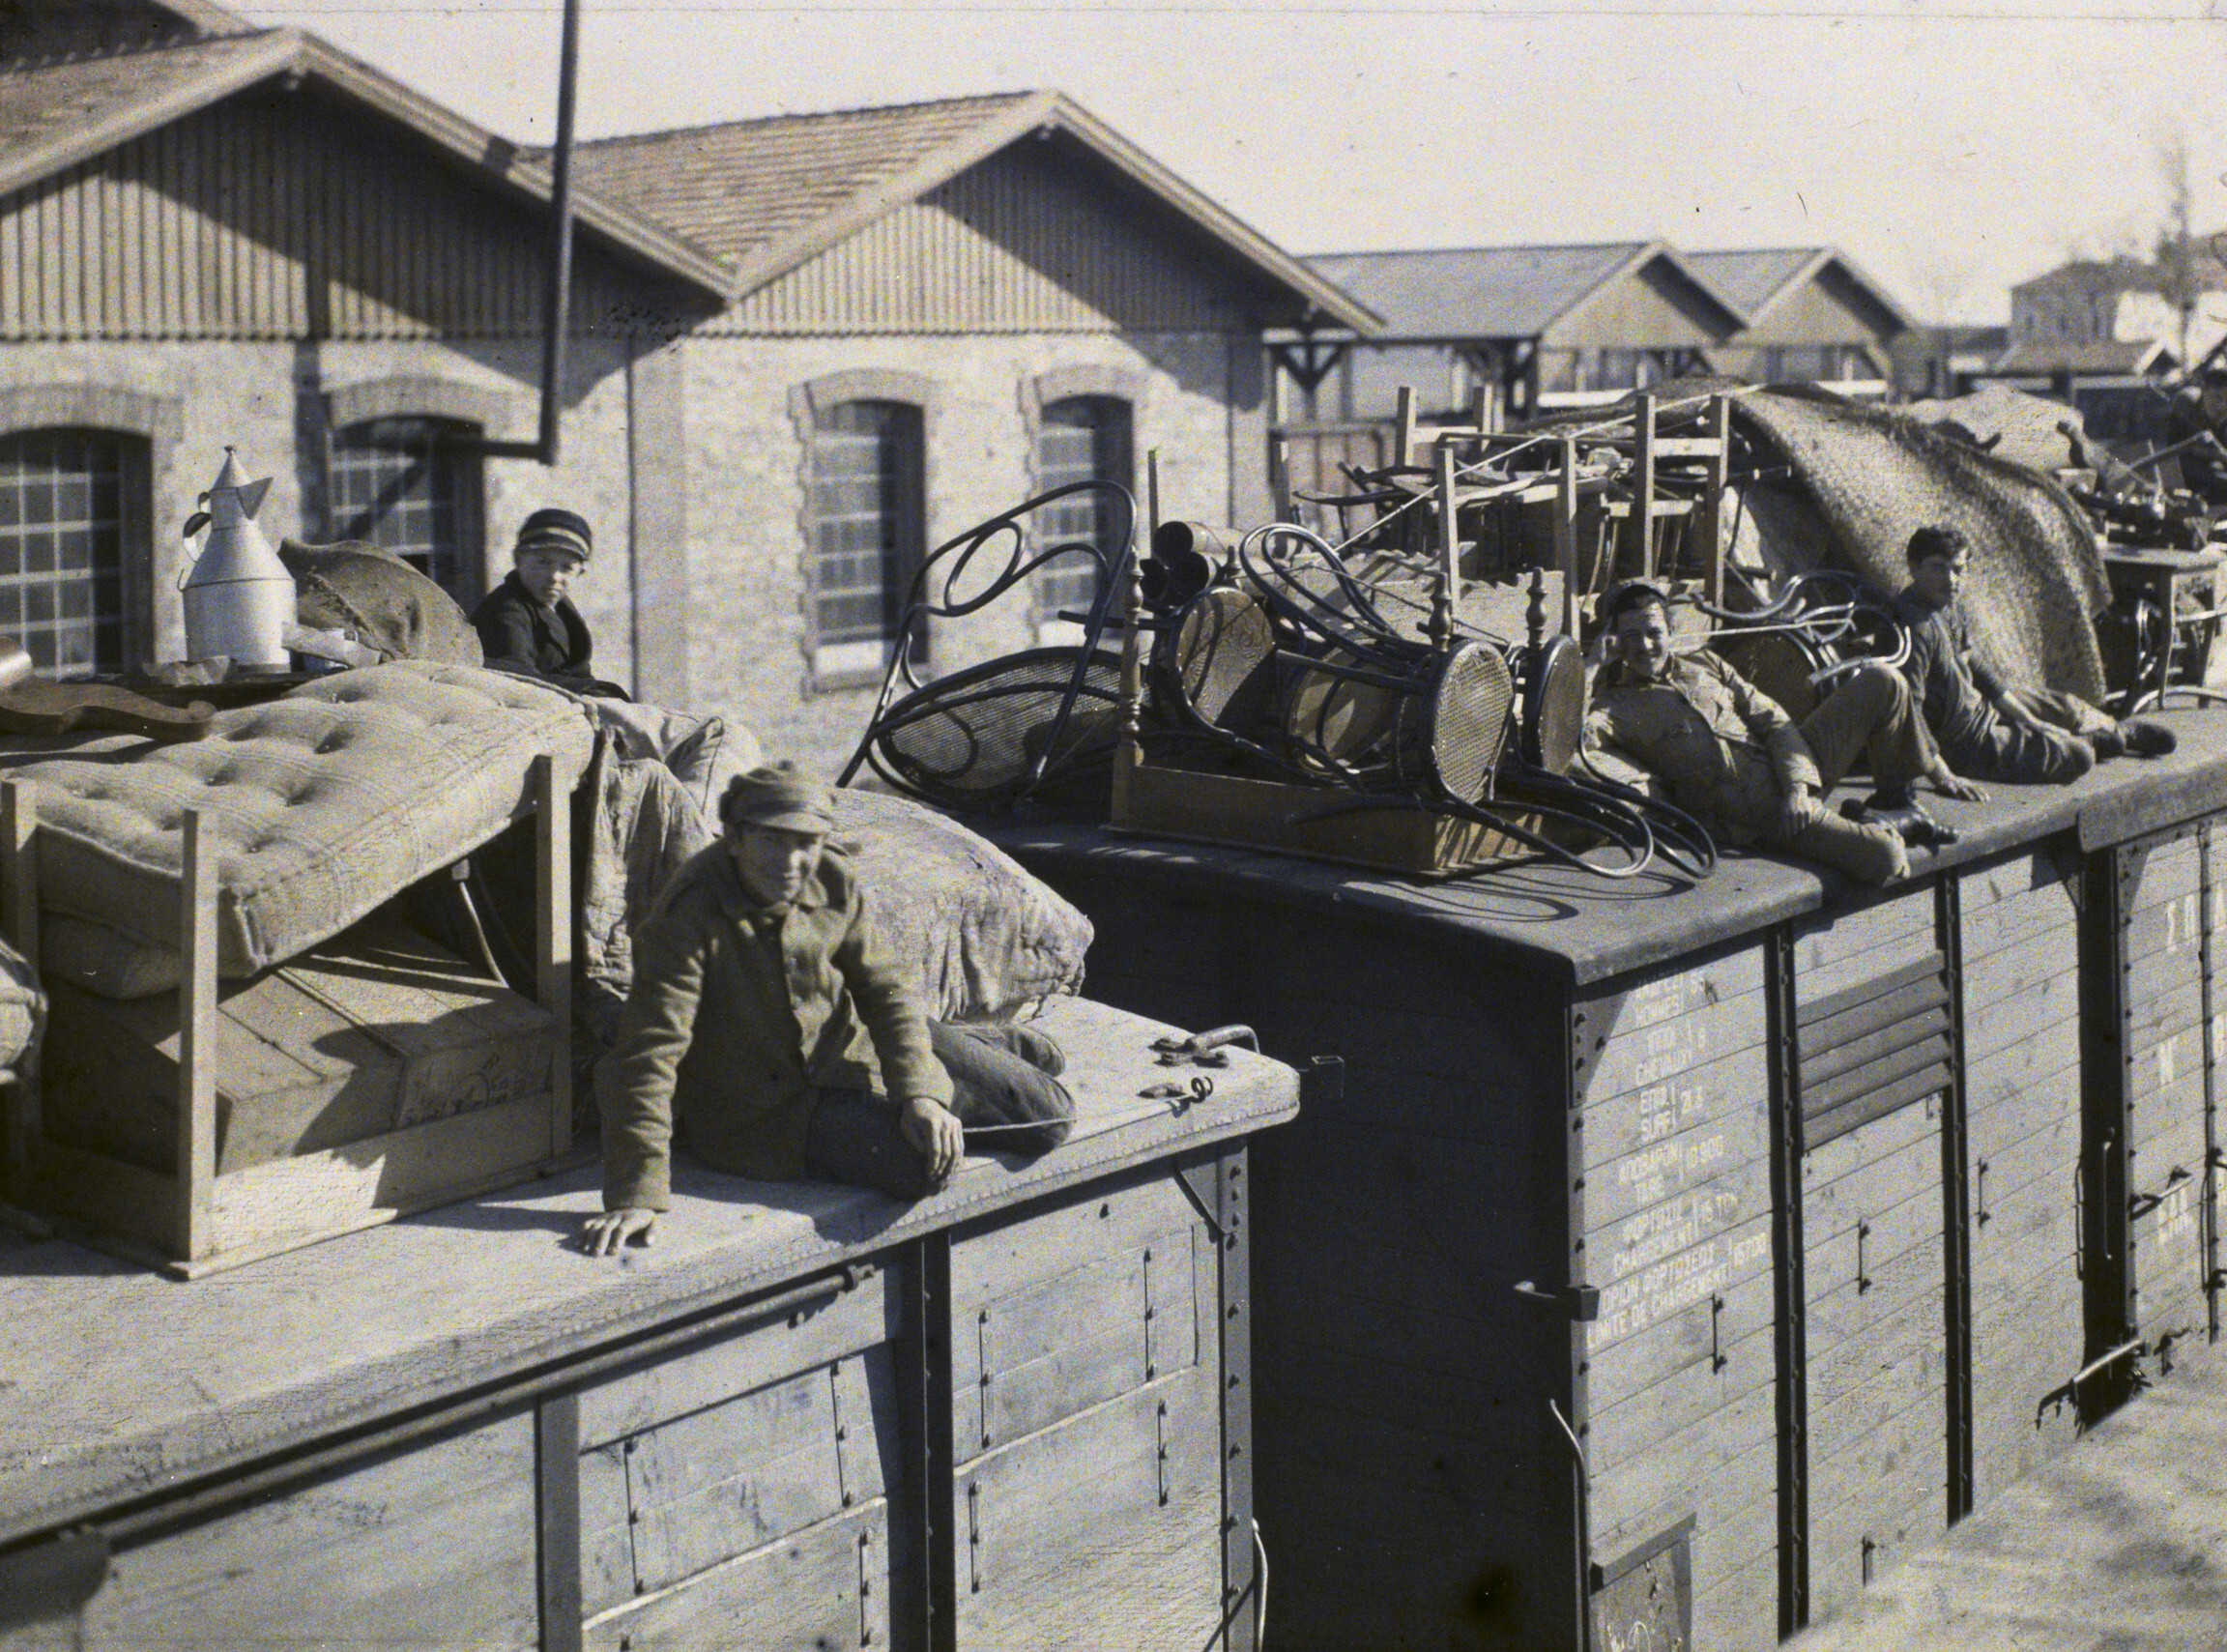 Адрианополь (Эдирне), Турция. Греки покидают город на крыше поезда, нагруженного мебелью, 1922 год, автор Фредерик Гадмер (автохром)